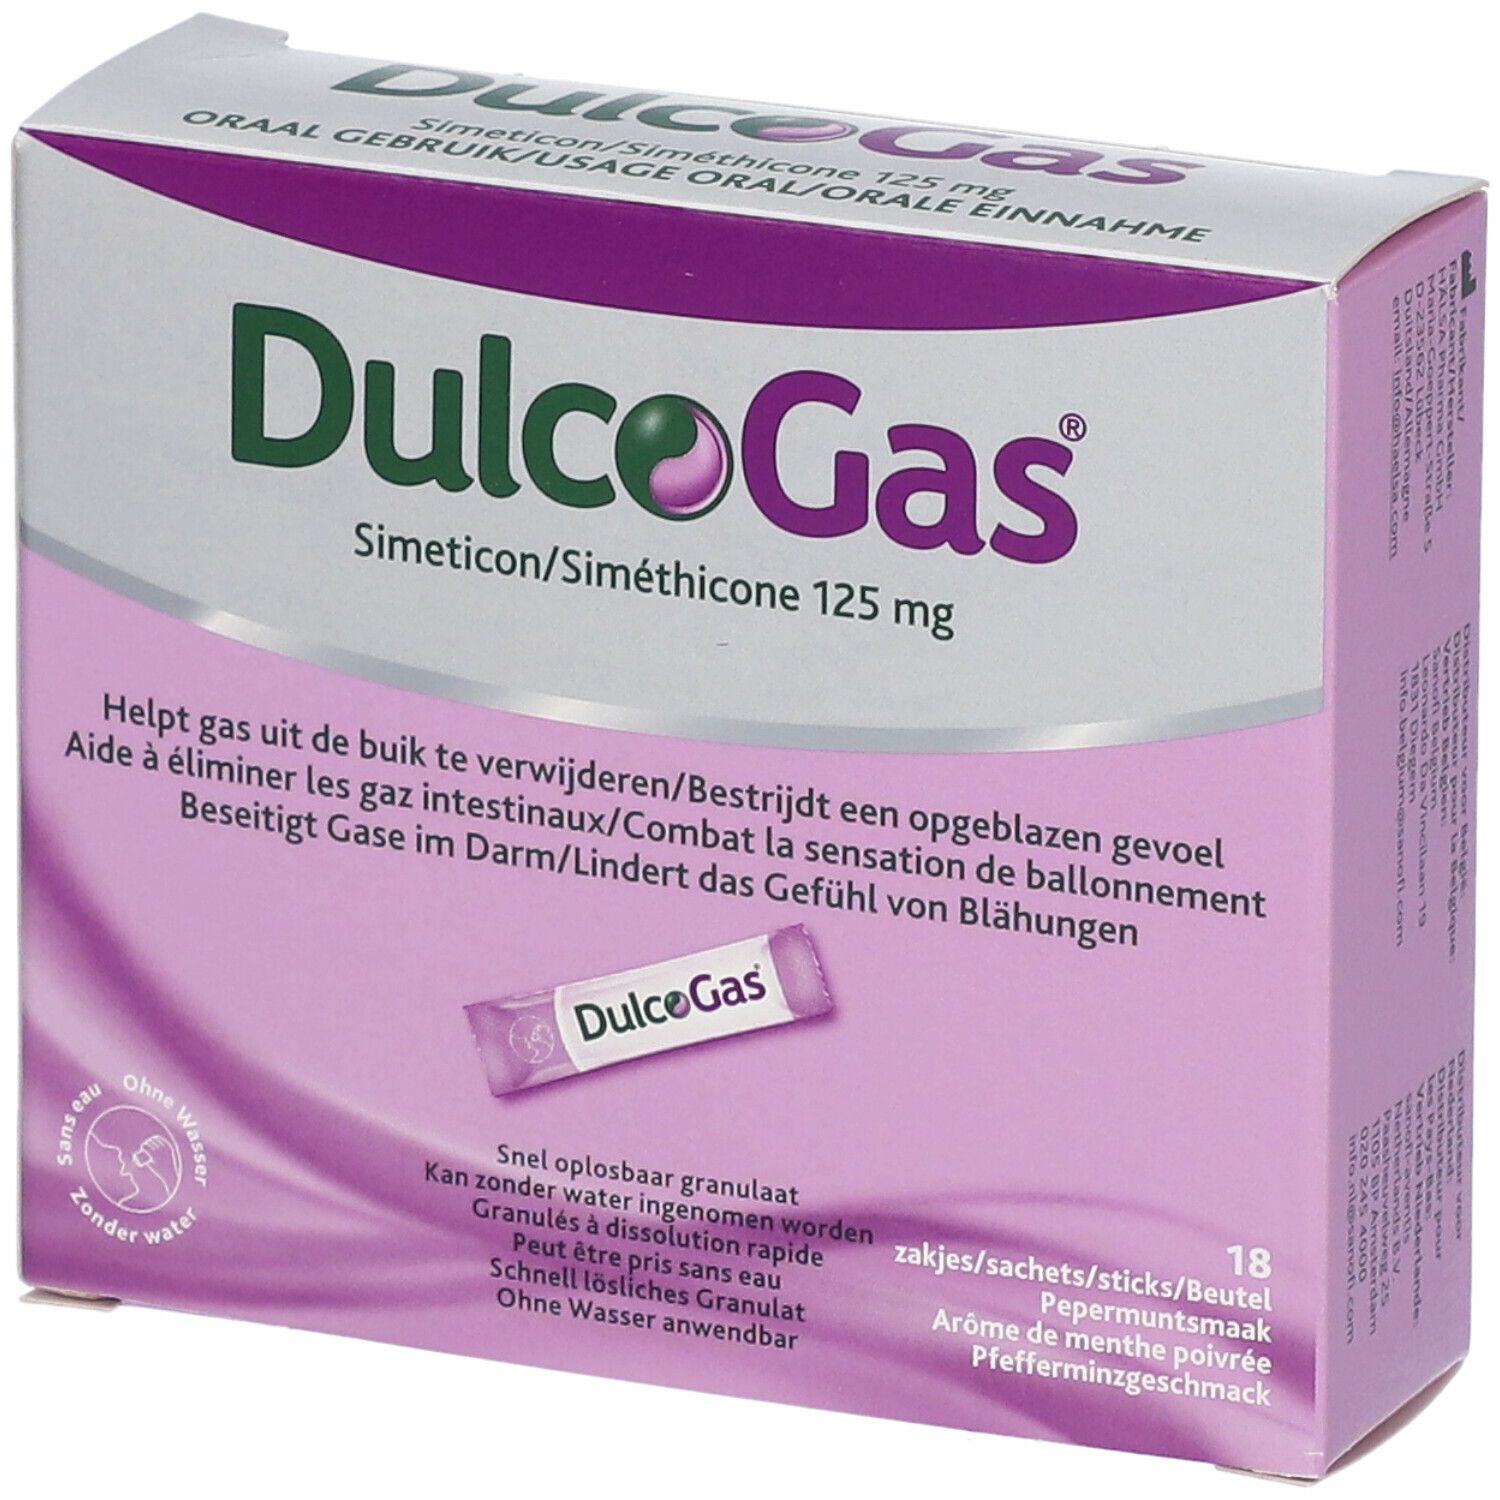 DulcoGas® 125 mg